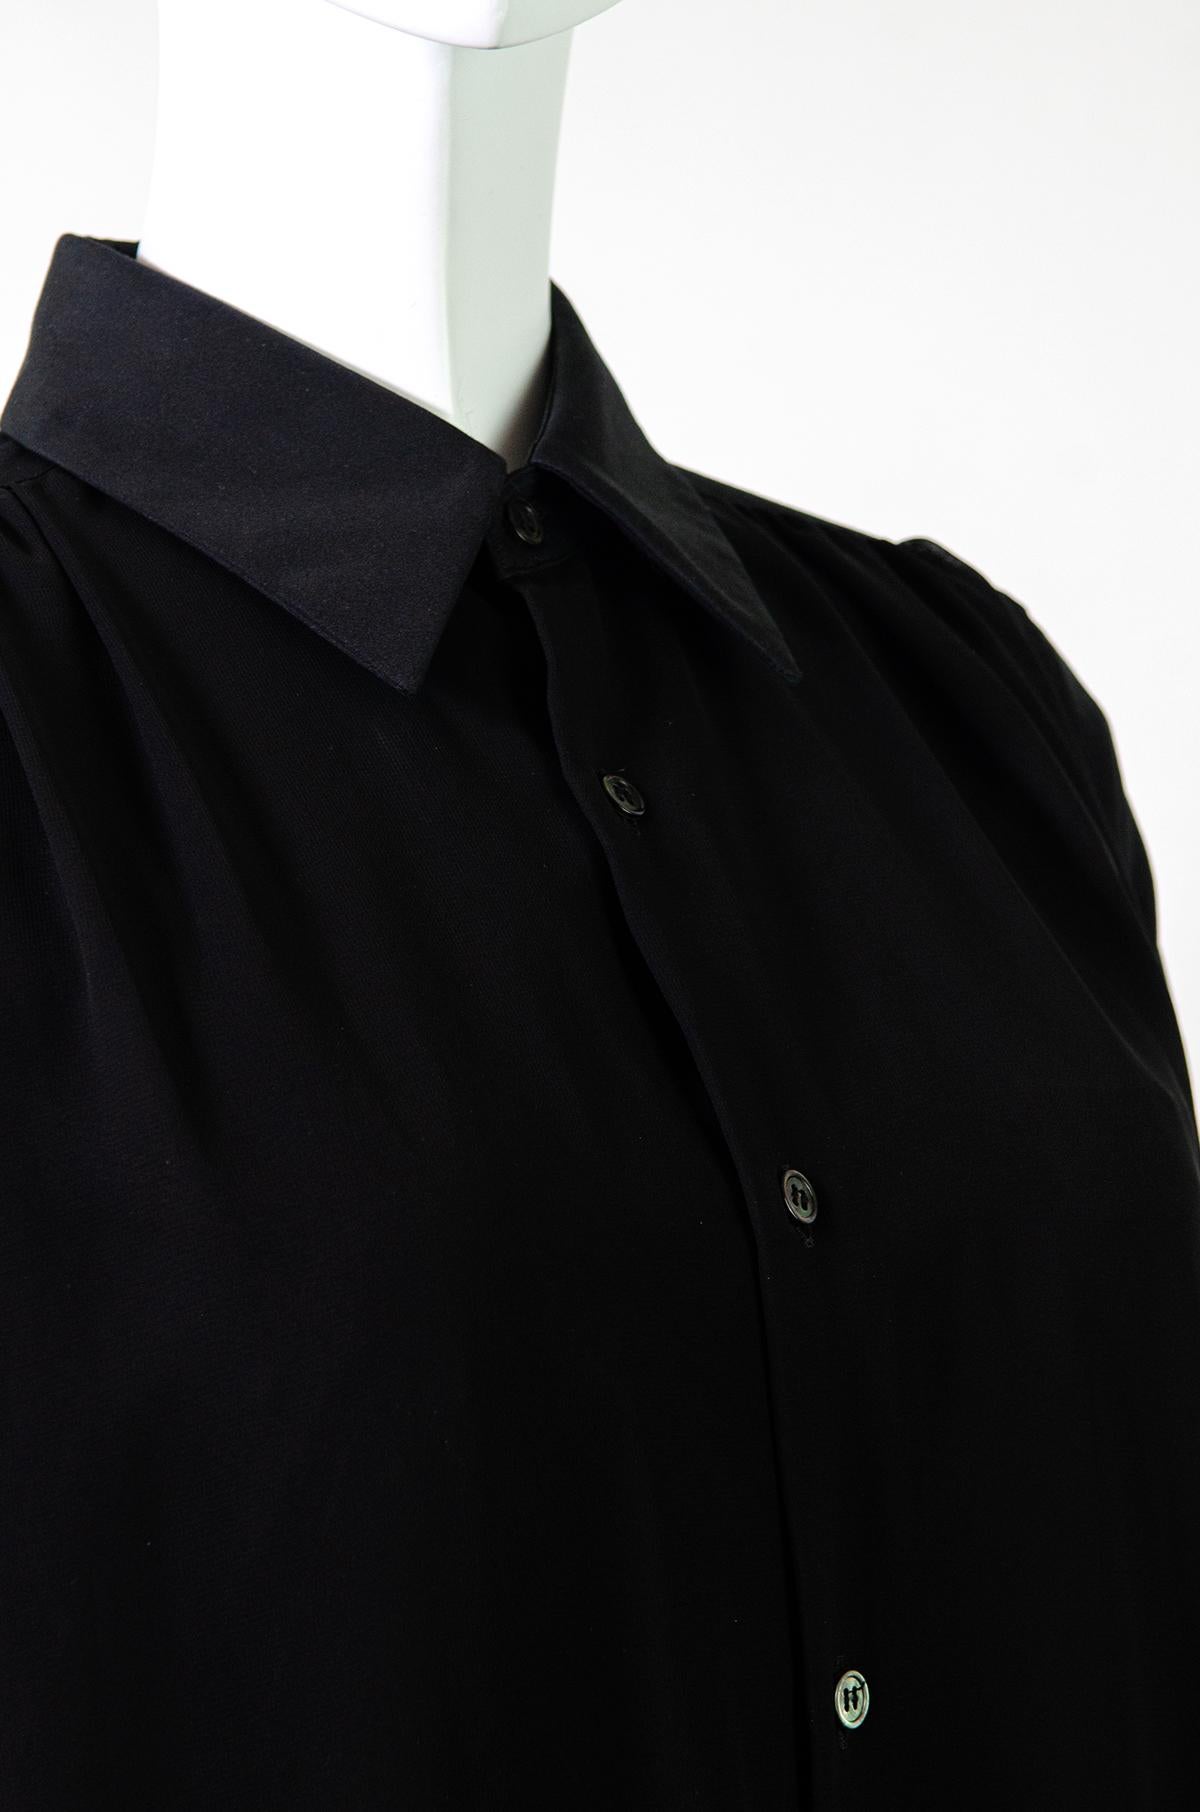 Comme Des Garçons Button-up Black Chiffon Shirt Dress  For Sale 2